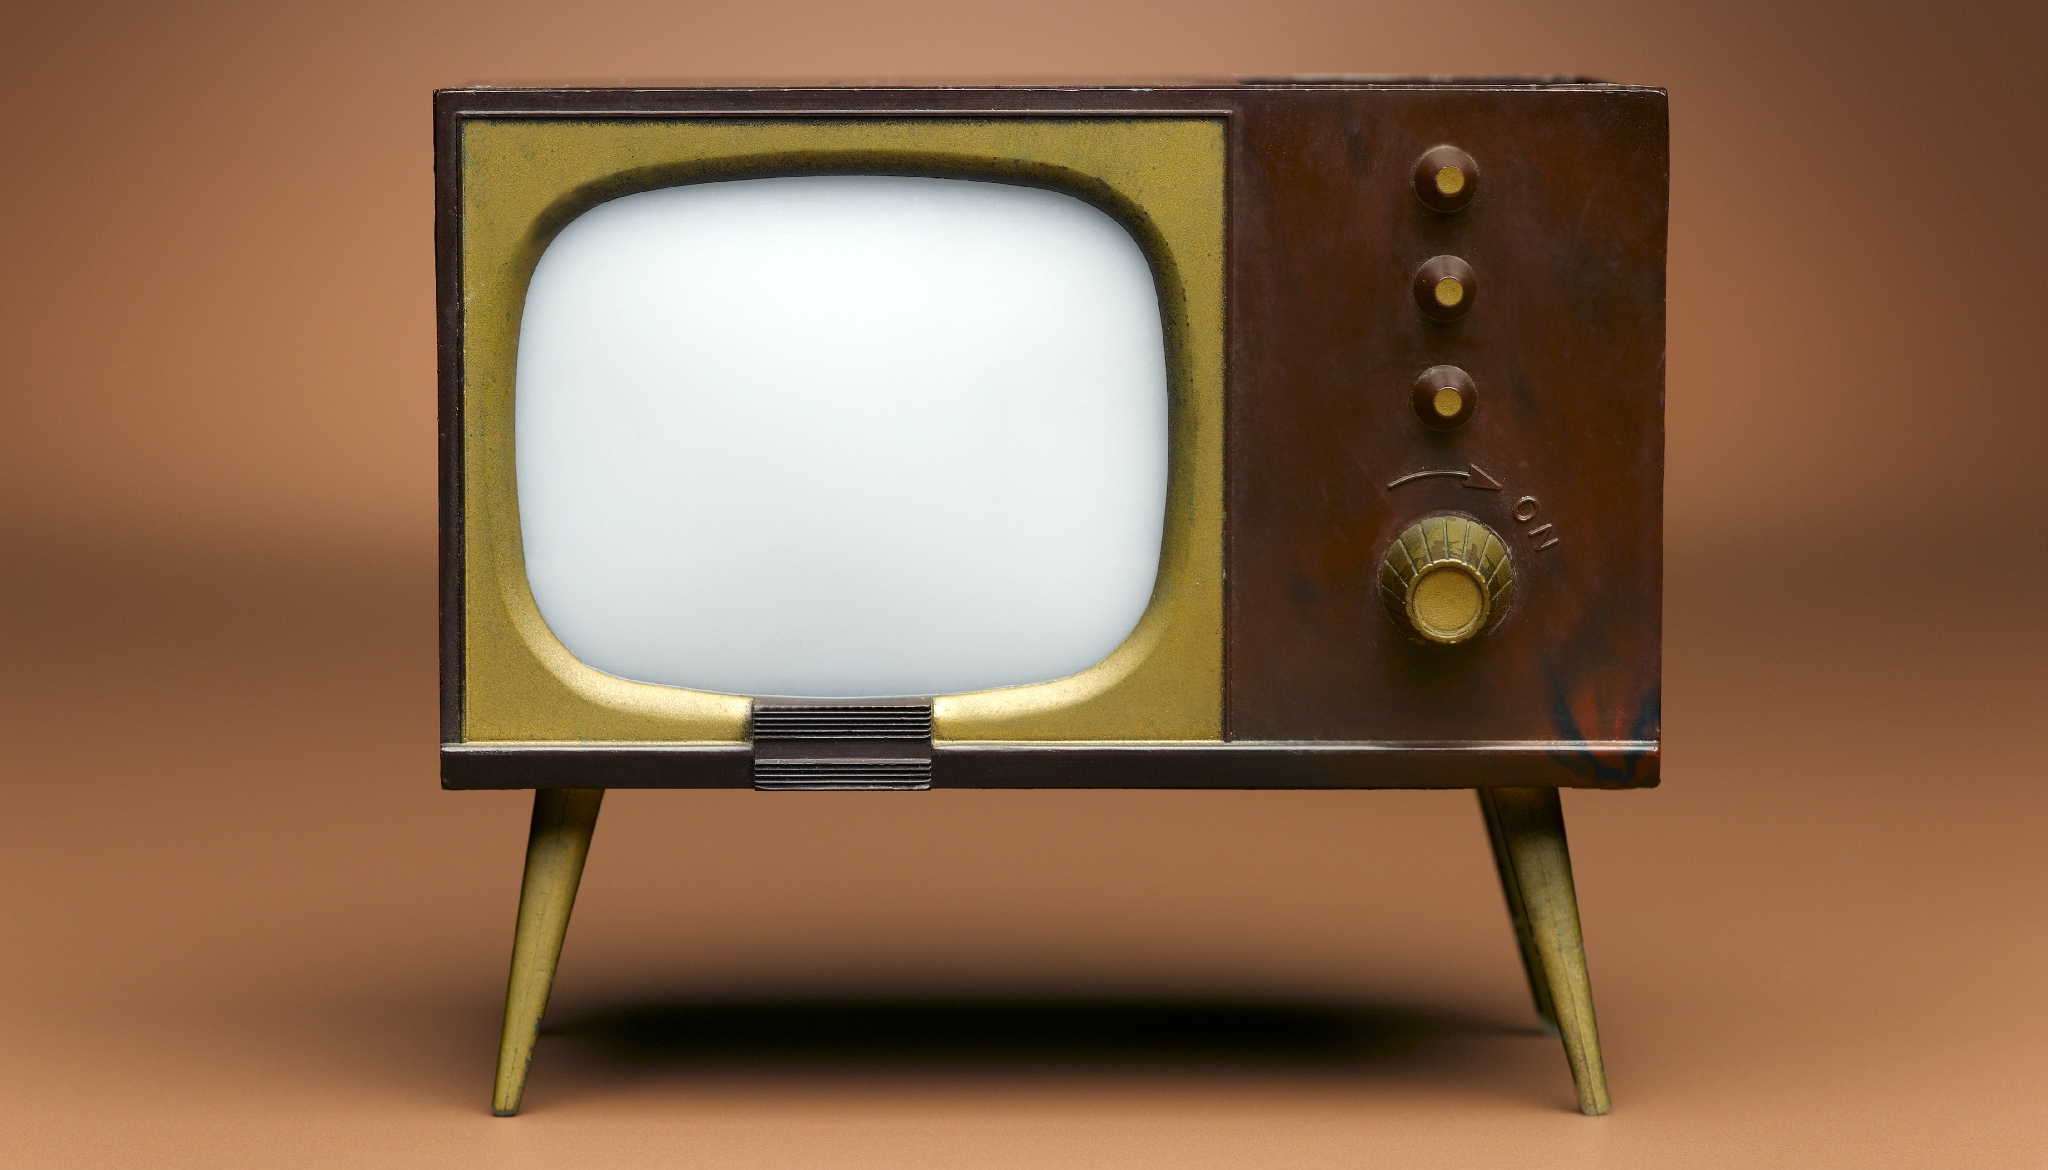 Видимо телевизор. Картинки 1 телевизора. Телевизор современный пузатый. Телевизор с кнопками на панели старый. Старый овальный телевизор.